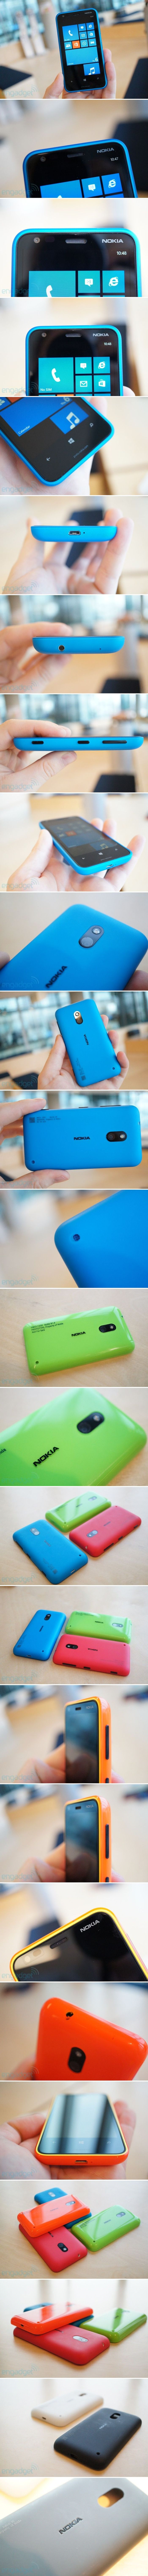 Nokia Lumia 620 képek és videók